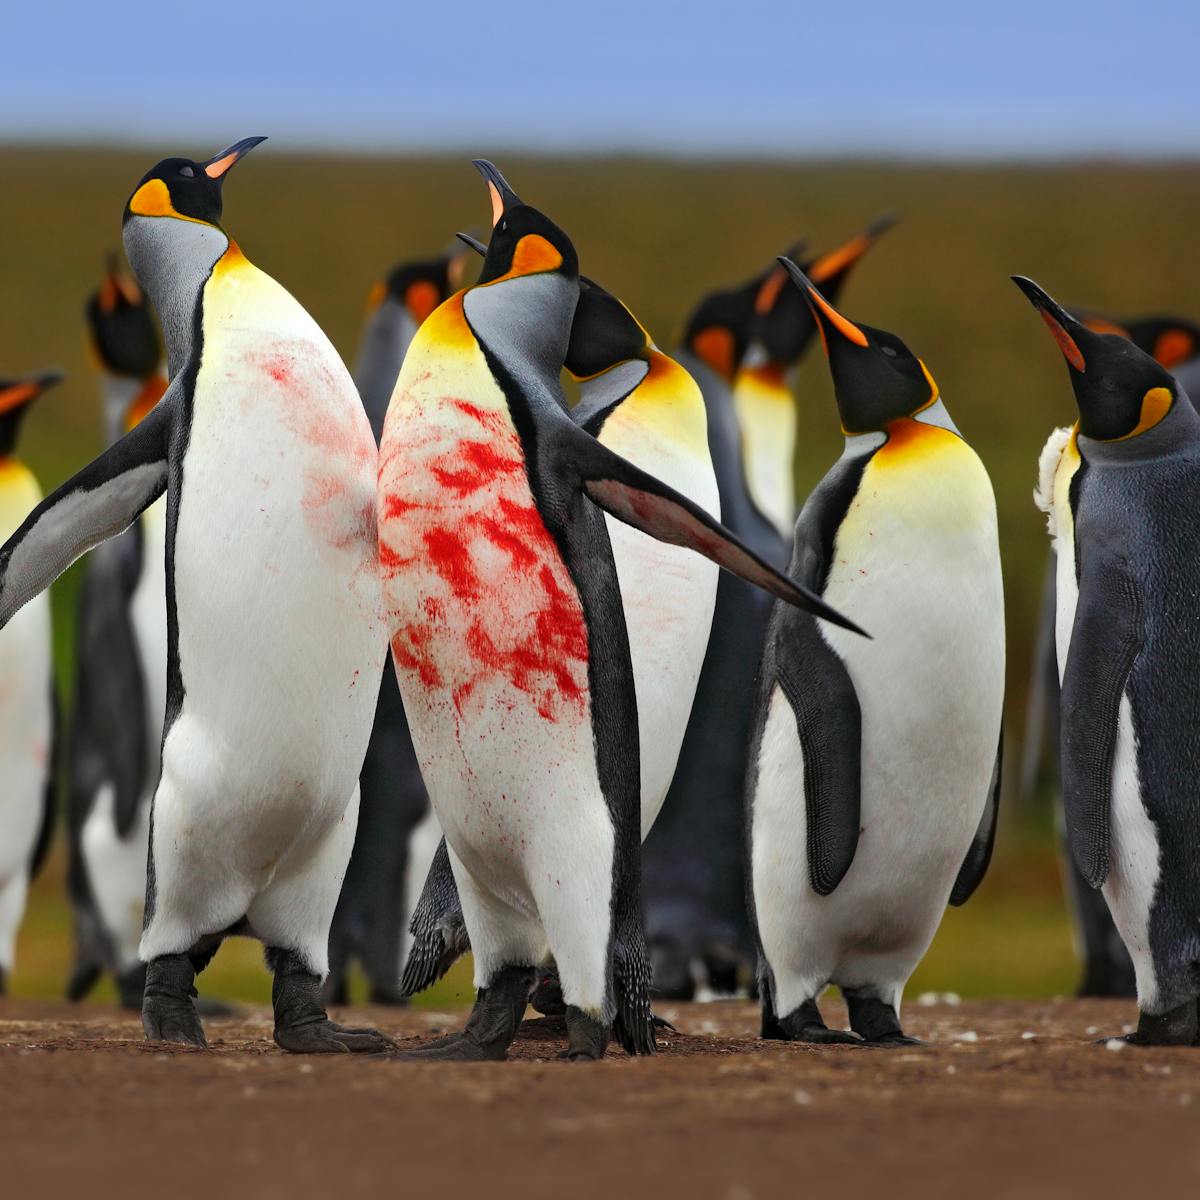 Penguin fight: understanding animal contest behaviour in five easy steps